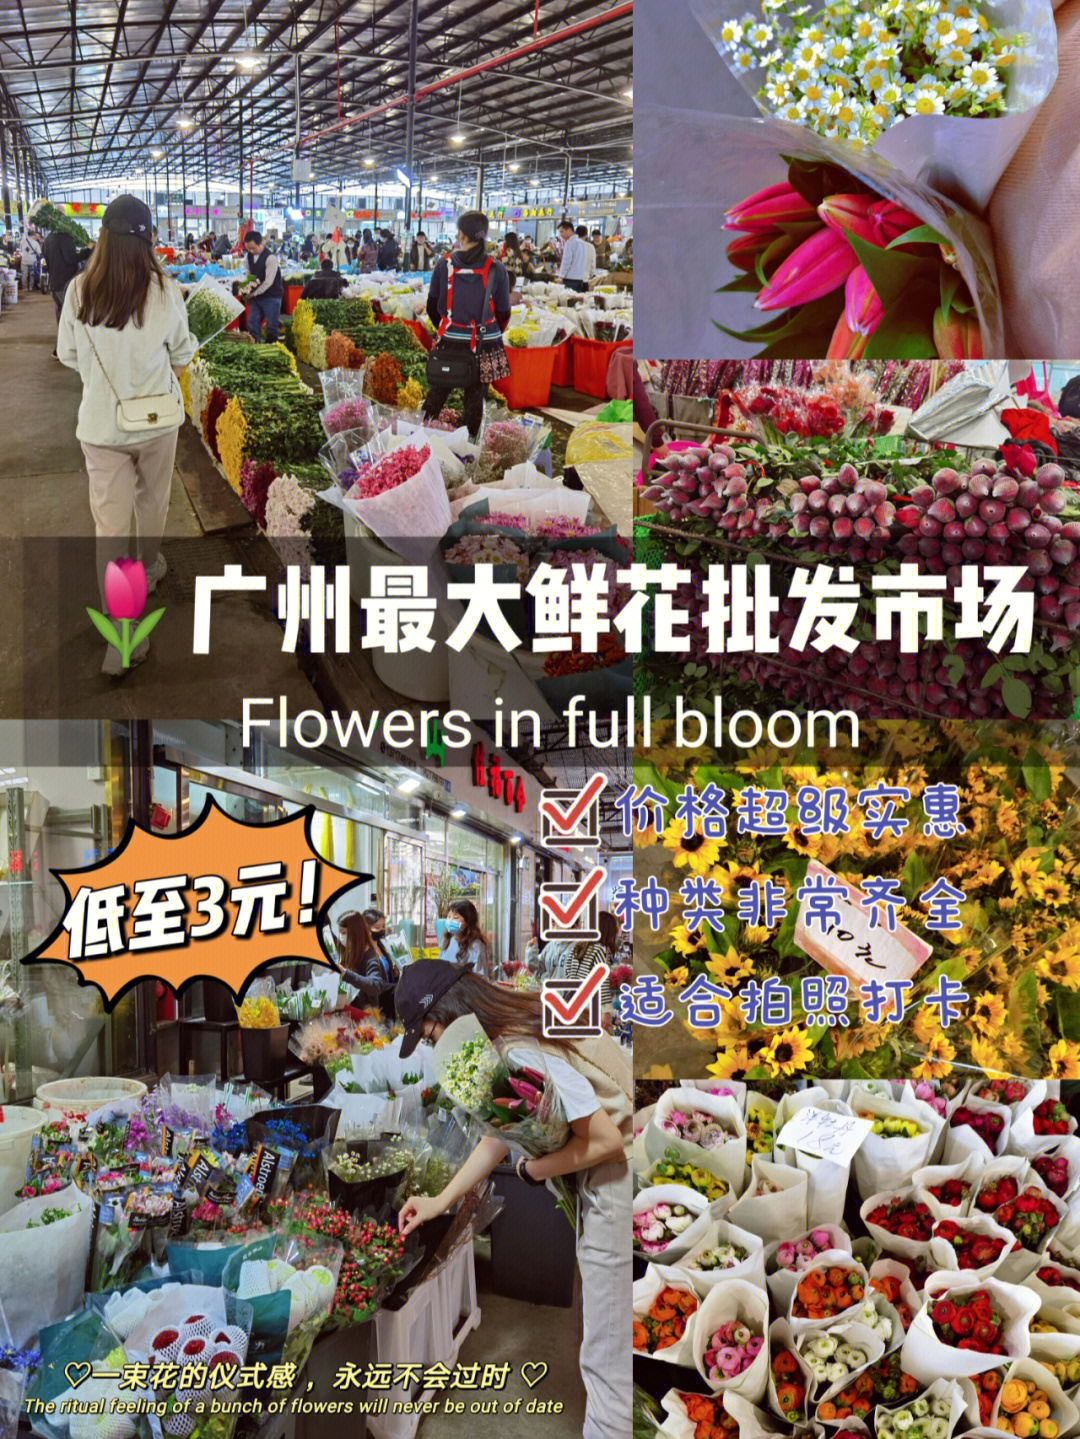 广州岭南花卉市场低至3元鲜花自由啦